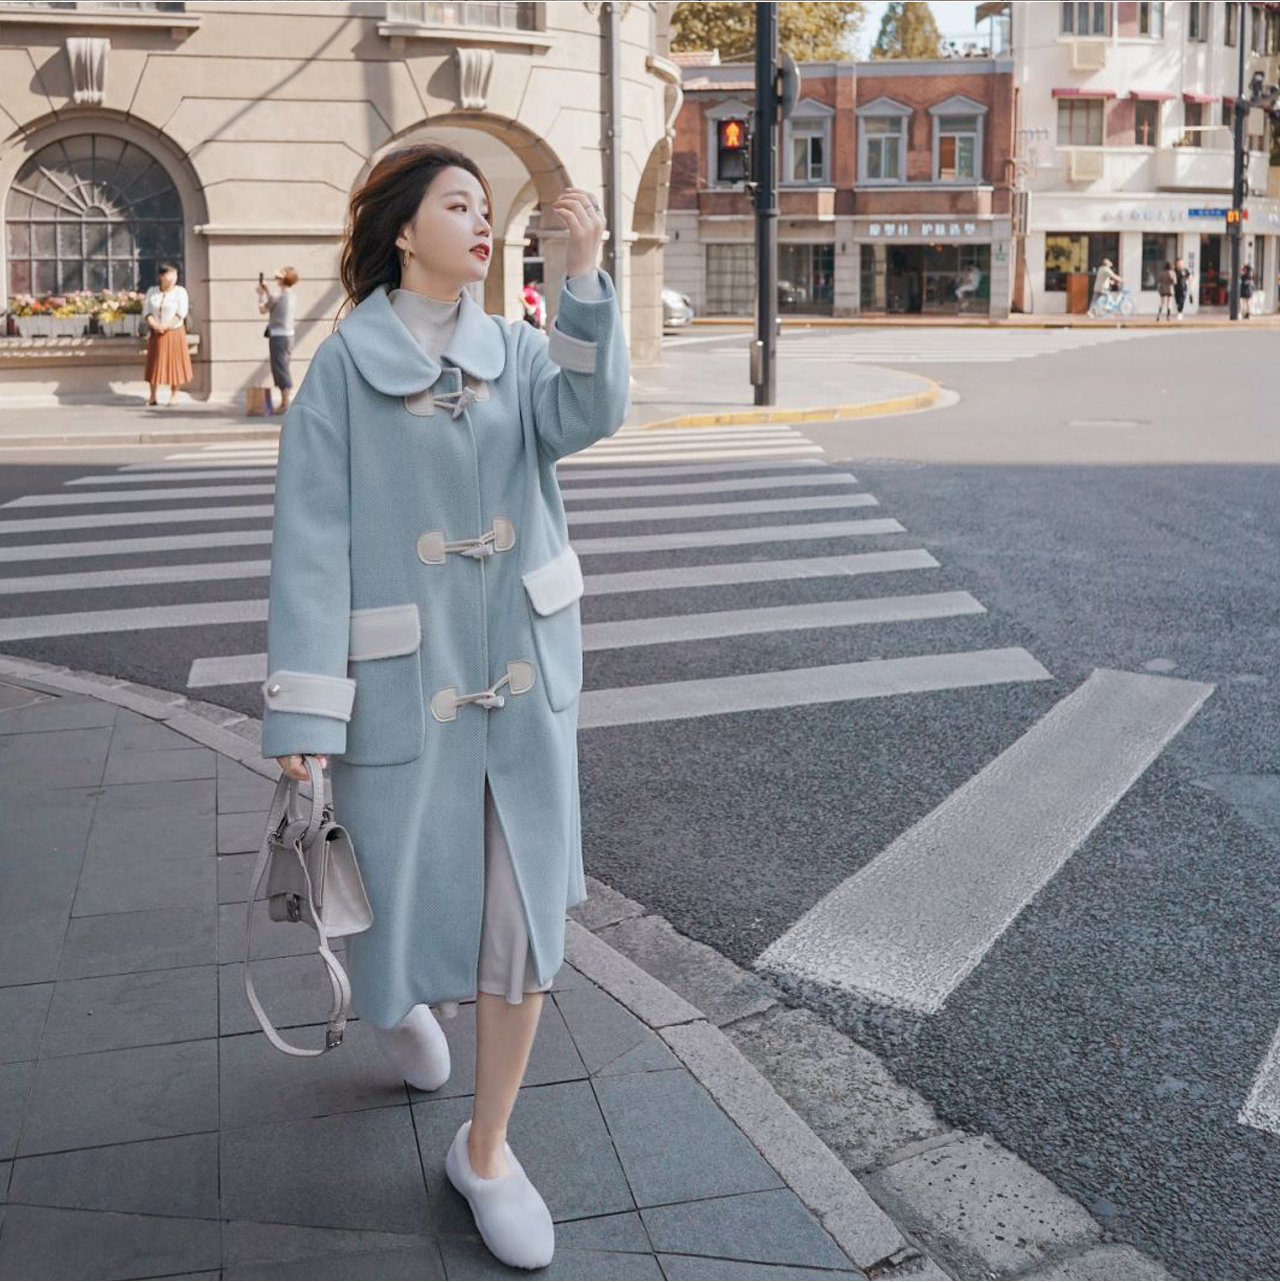 Regit 即納 Sky Blue Duffel Long Coat 韓国ファッション ロングコート かわいい 冬用アウター 10代代 コート かわいいコート スカイブルー ダッフルコート ラウンド襟 丸いえり Regit